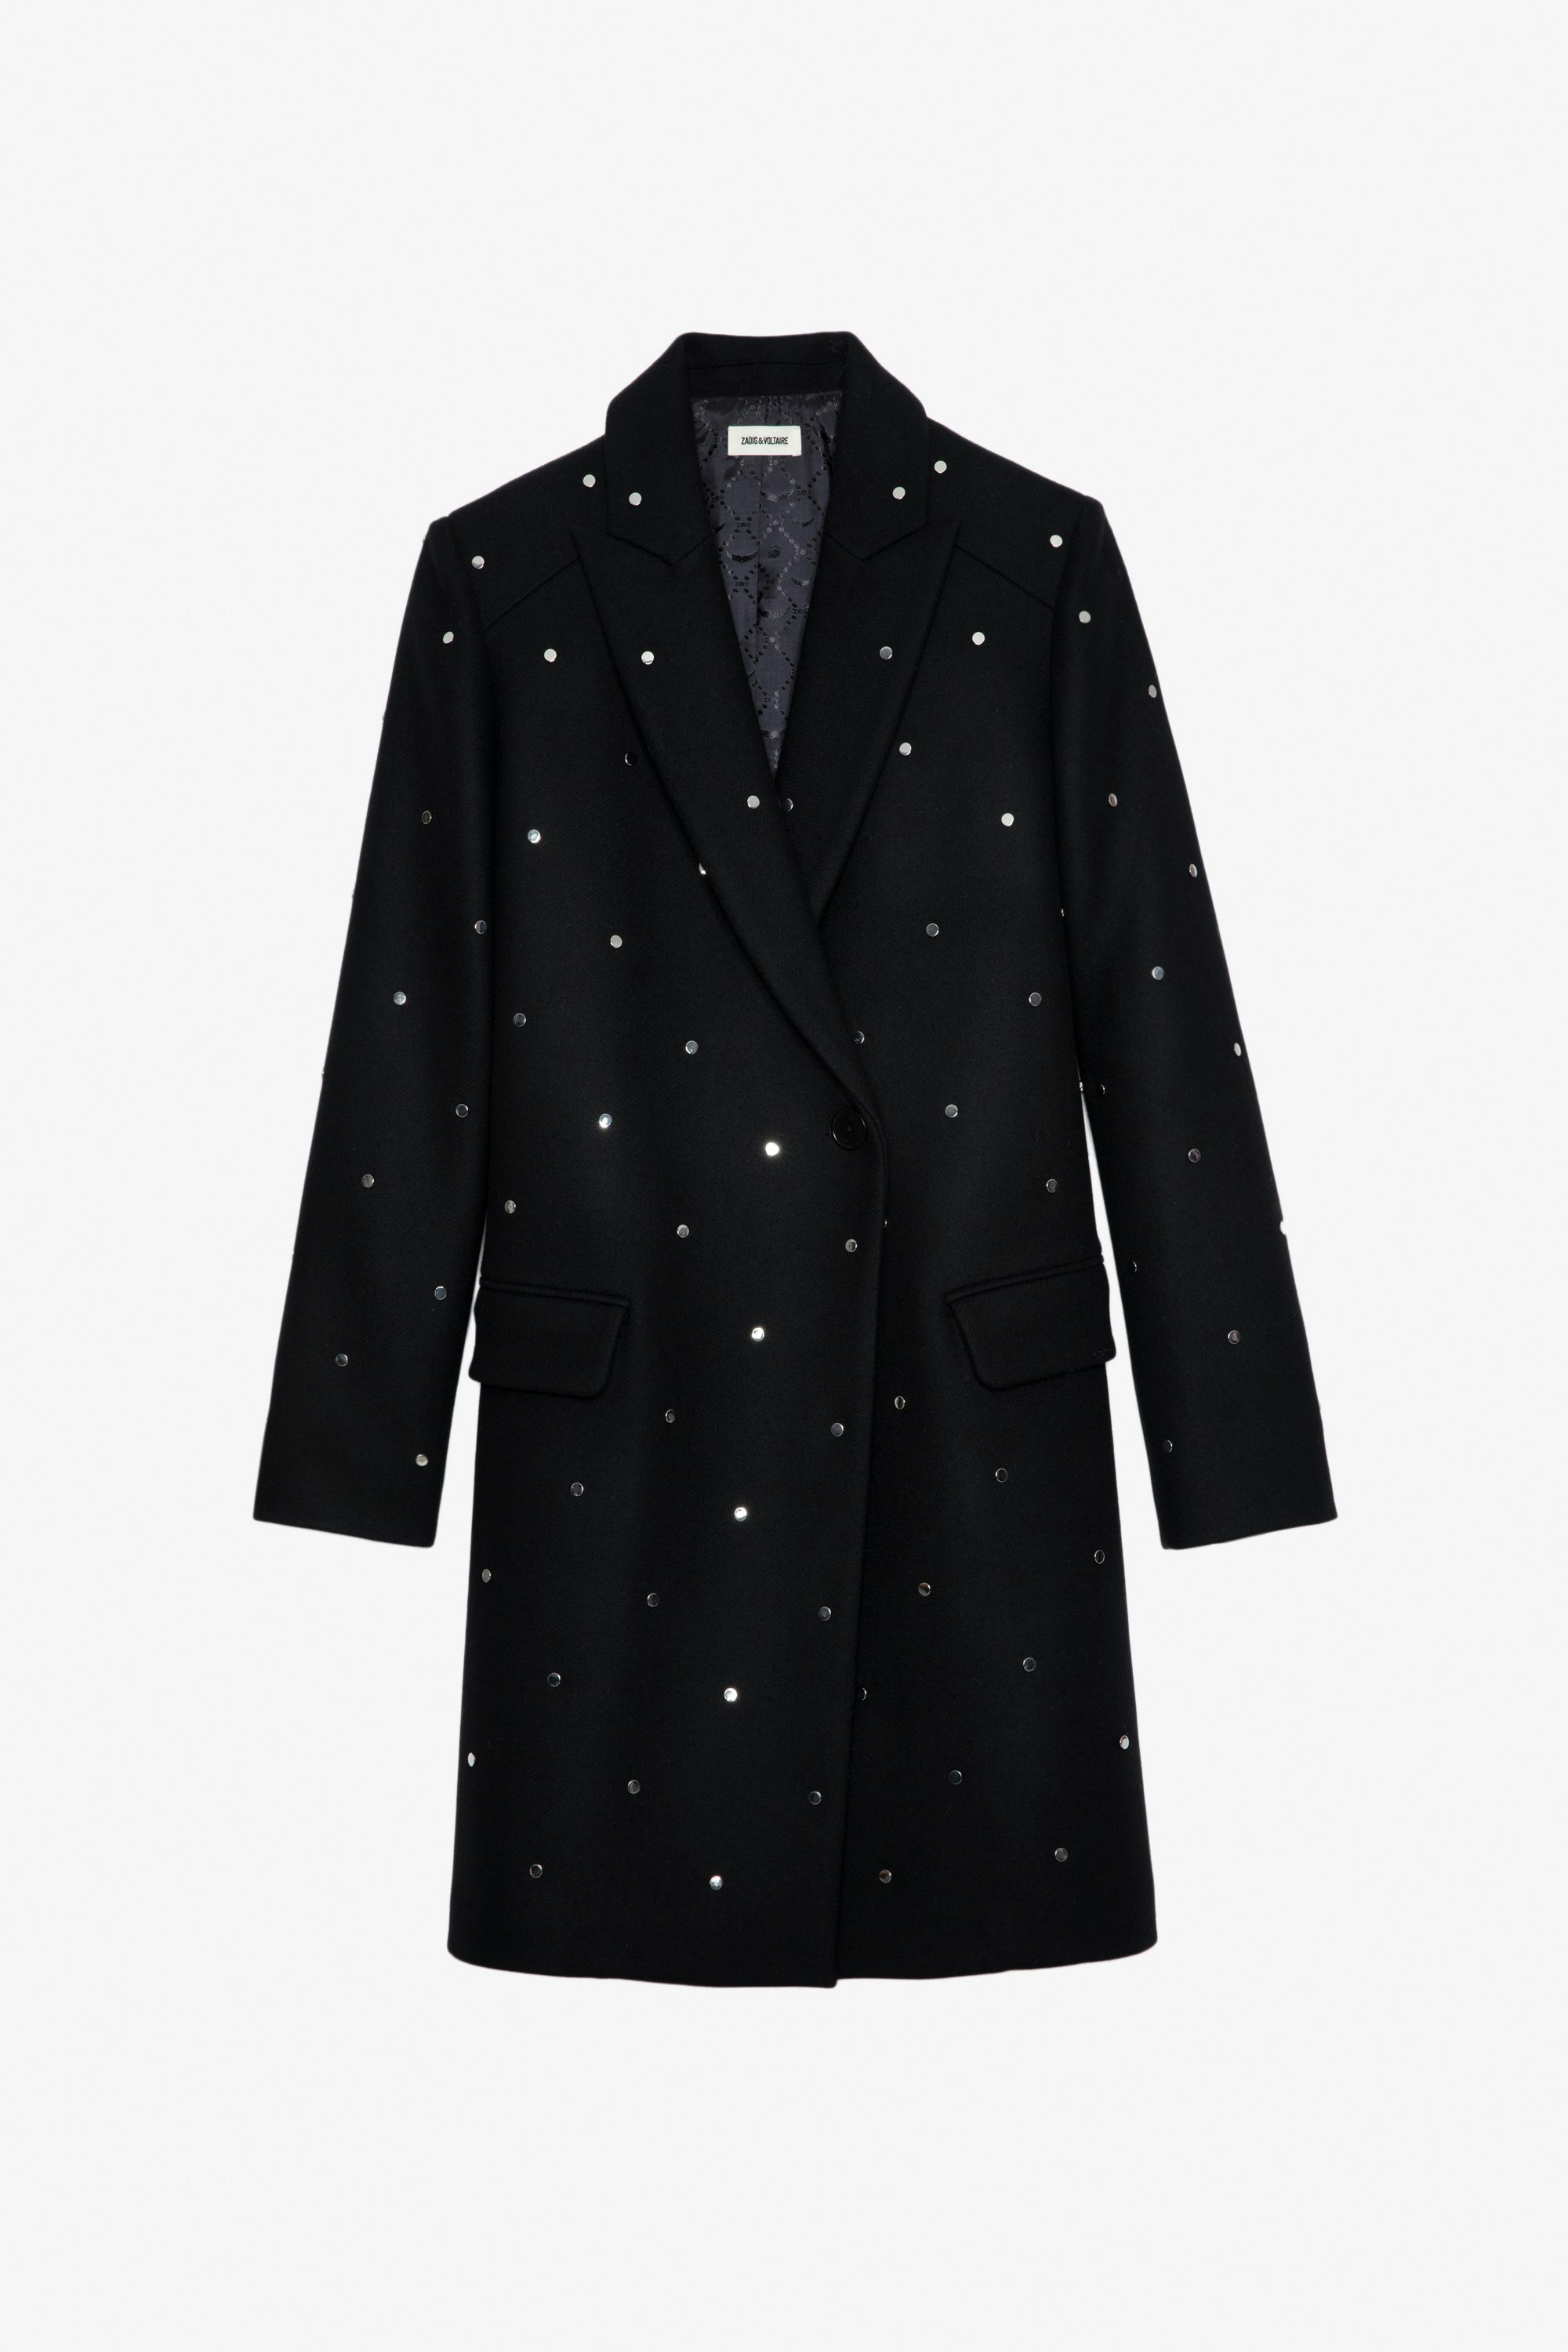 Marco Studs Coat - Women's black coat.